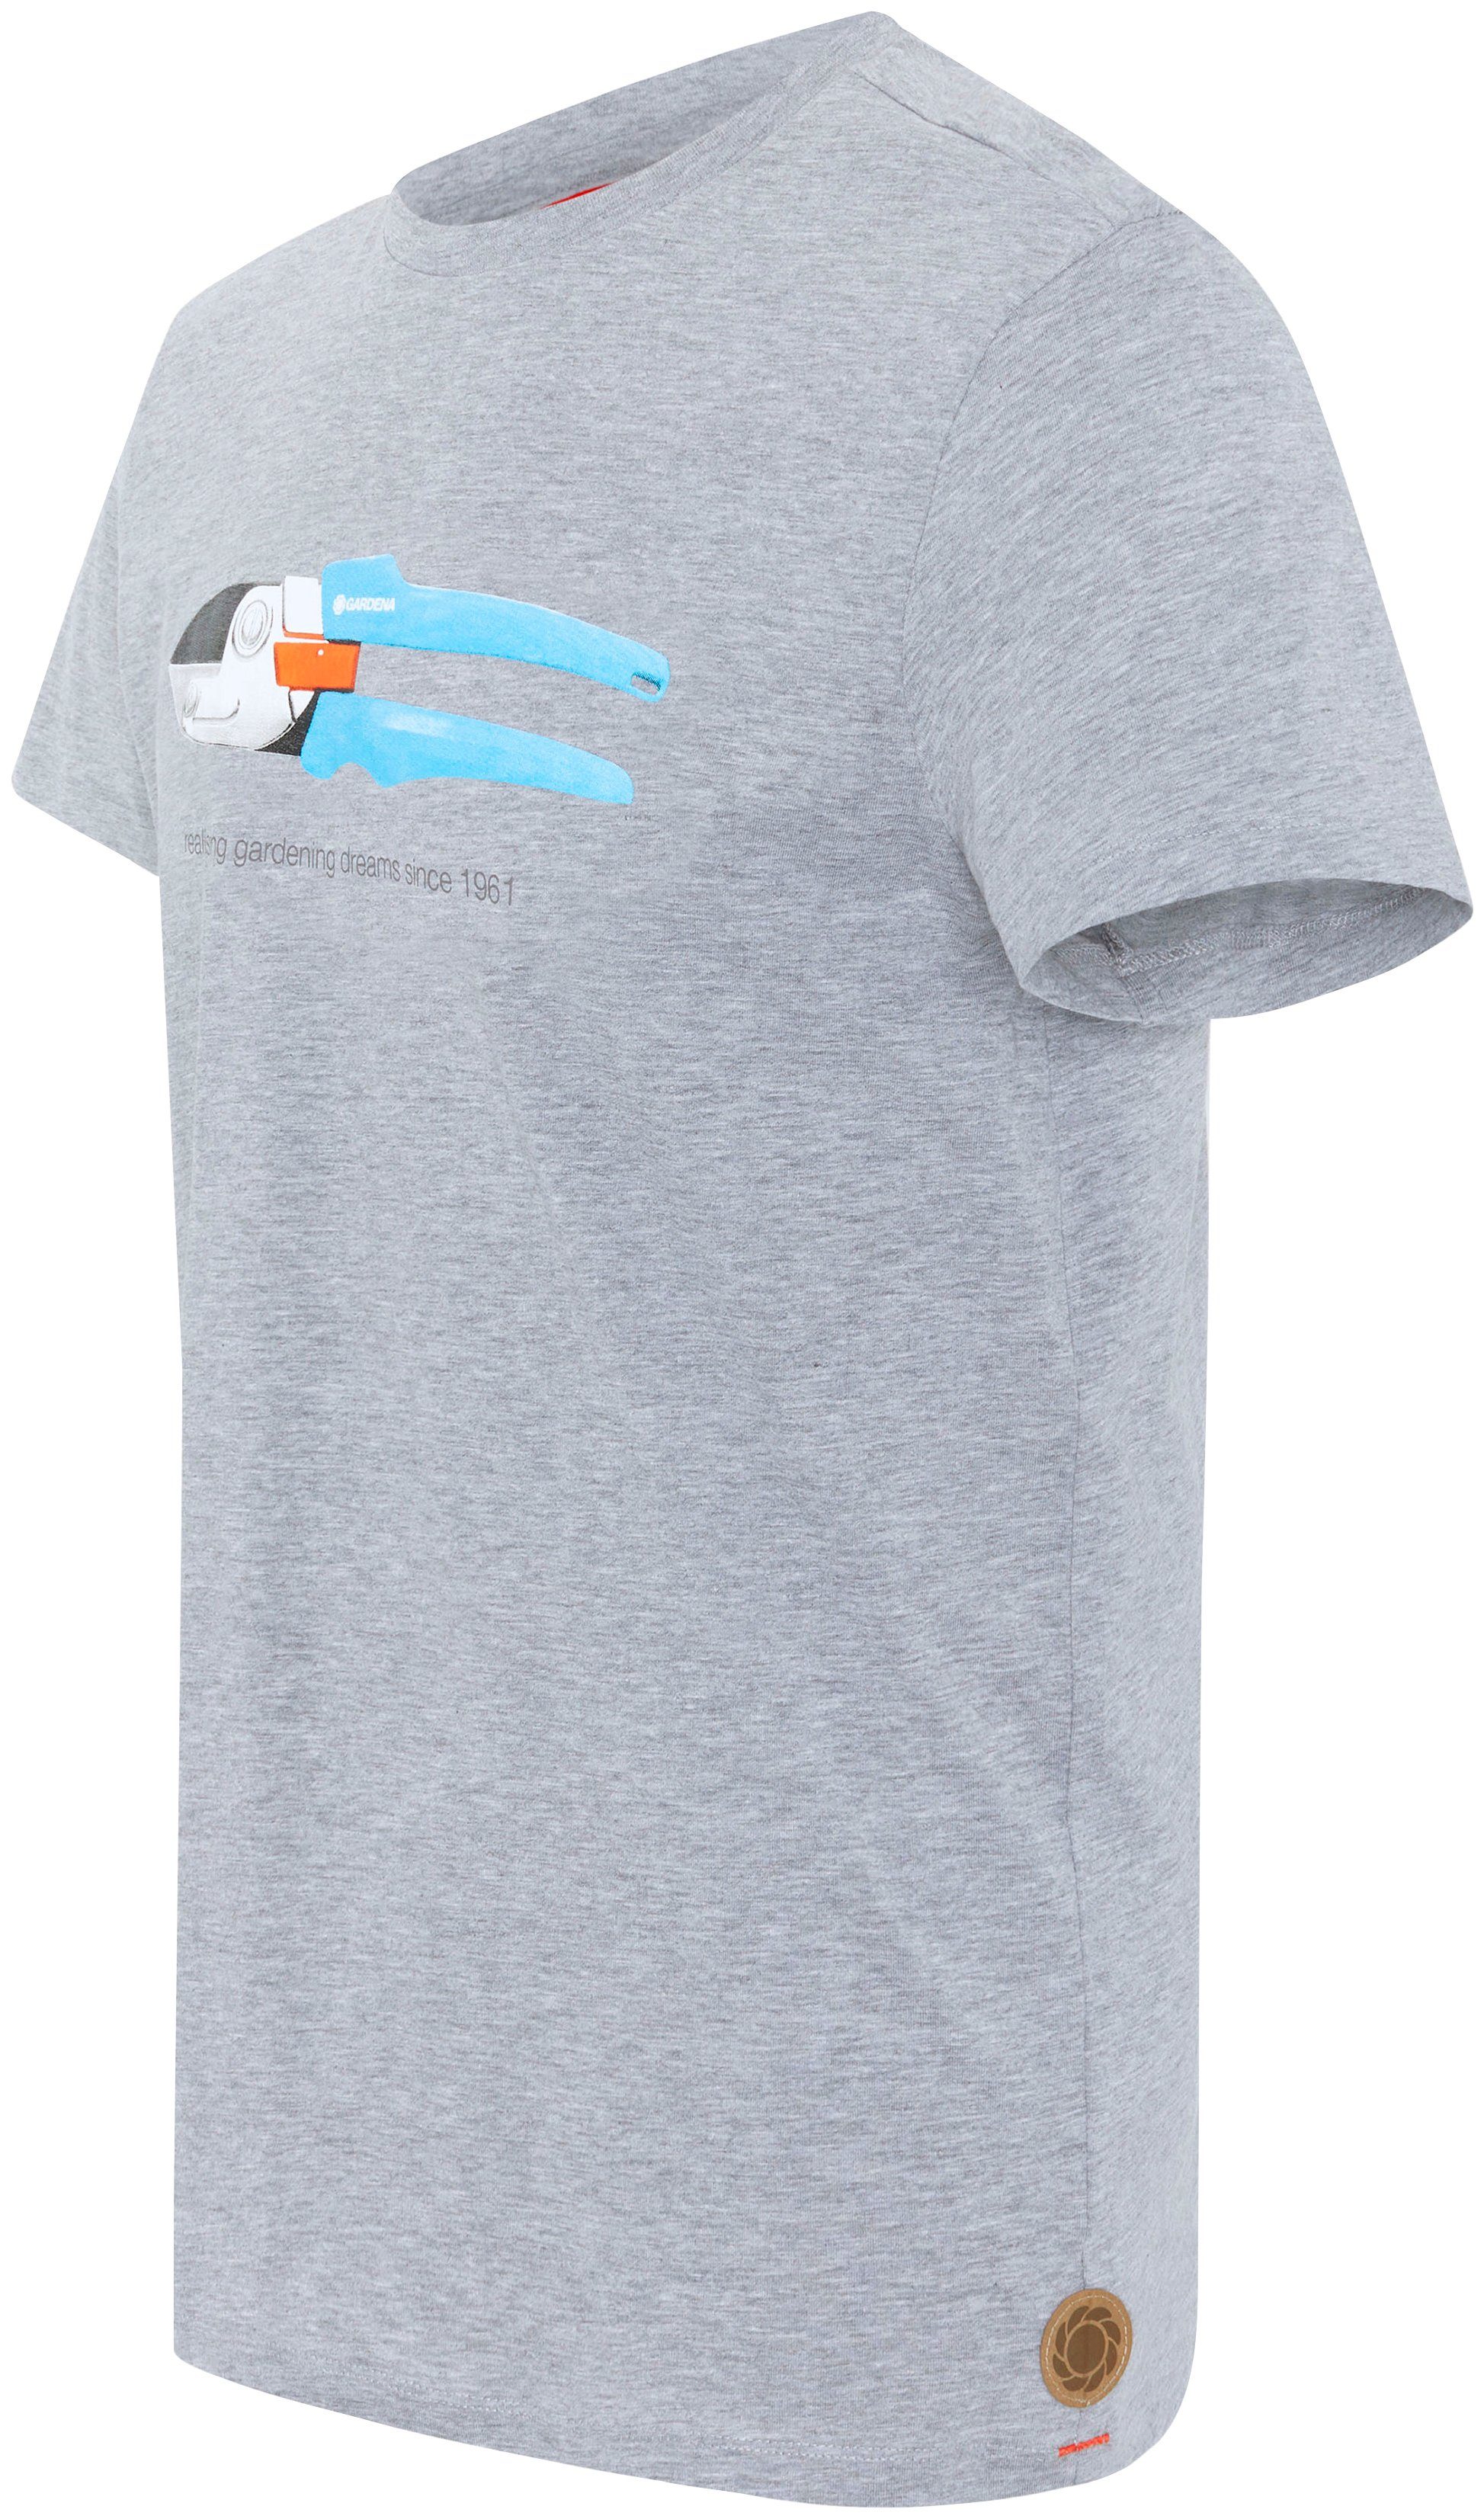 GARDENA Melange mit Grey T-Shirt Aufdruck Light